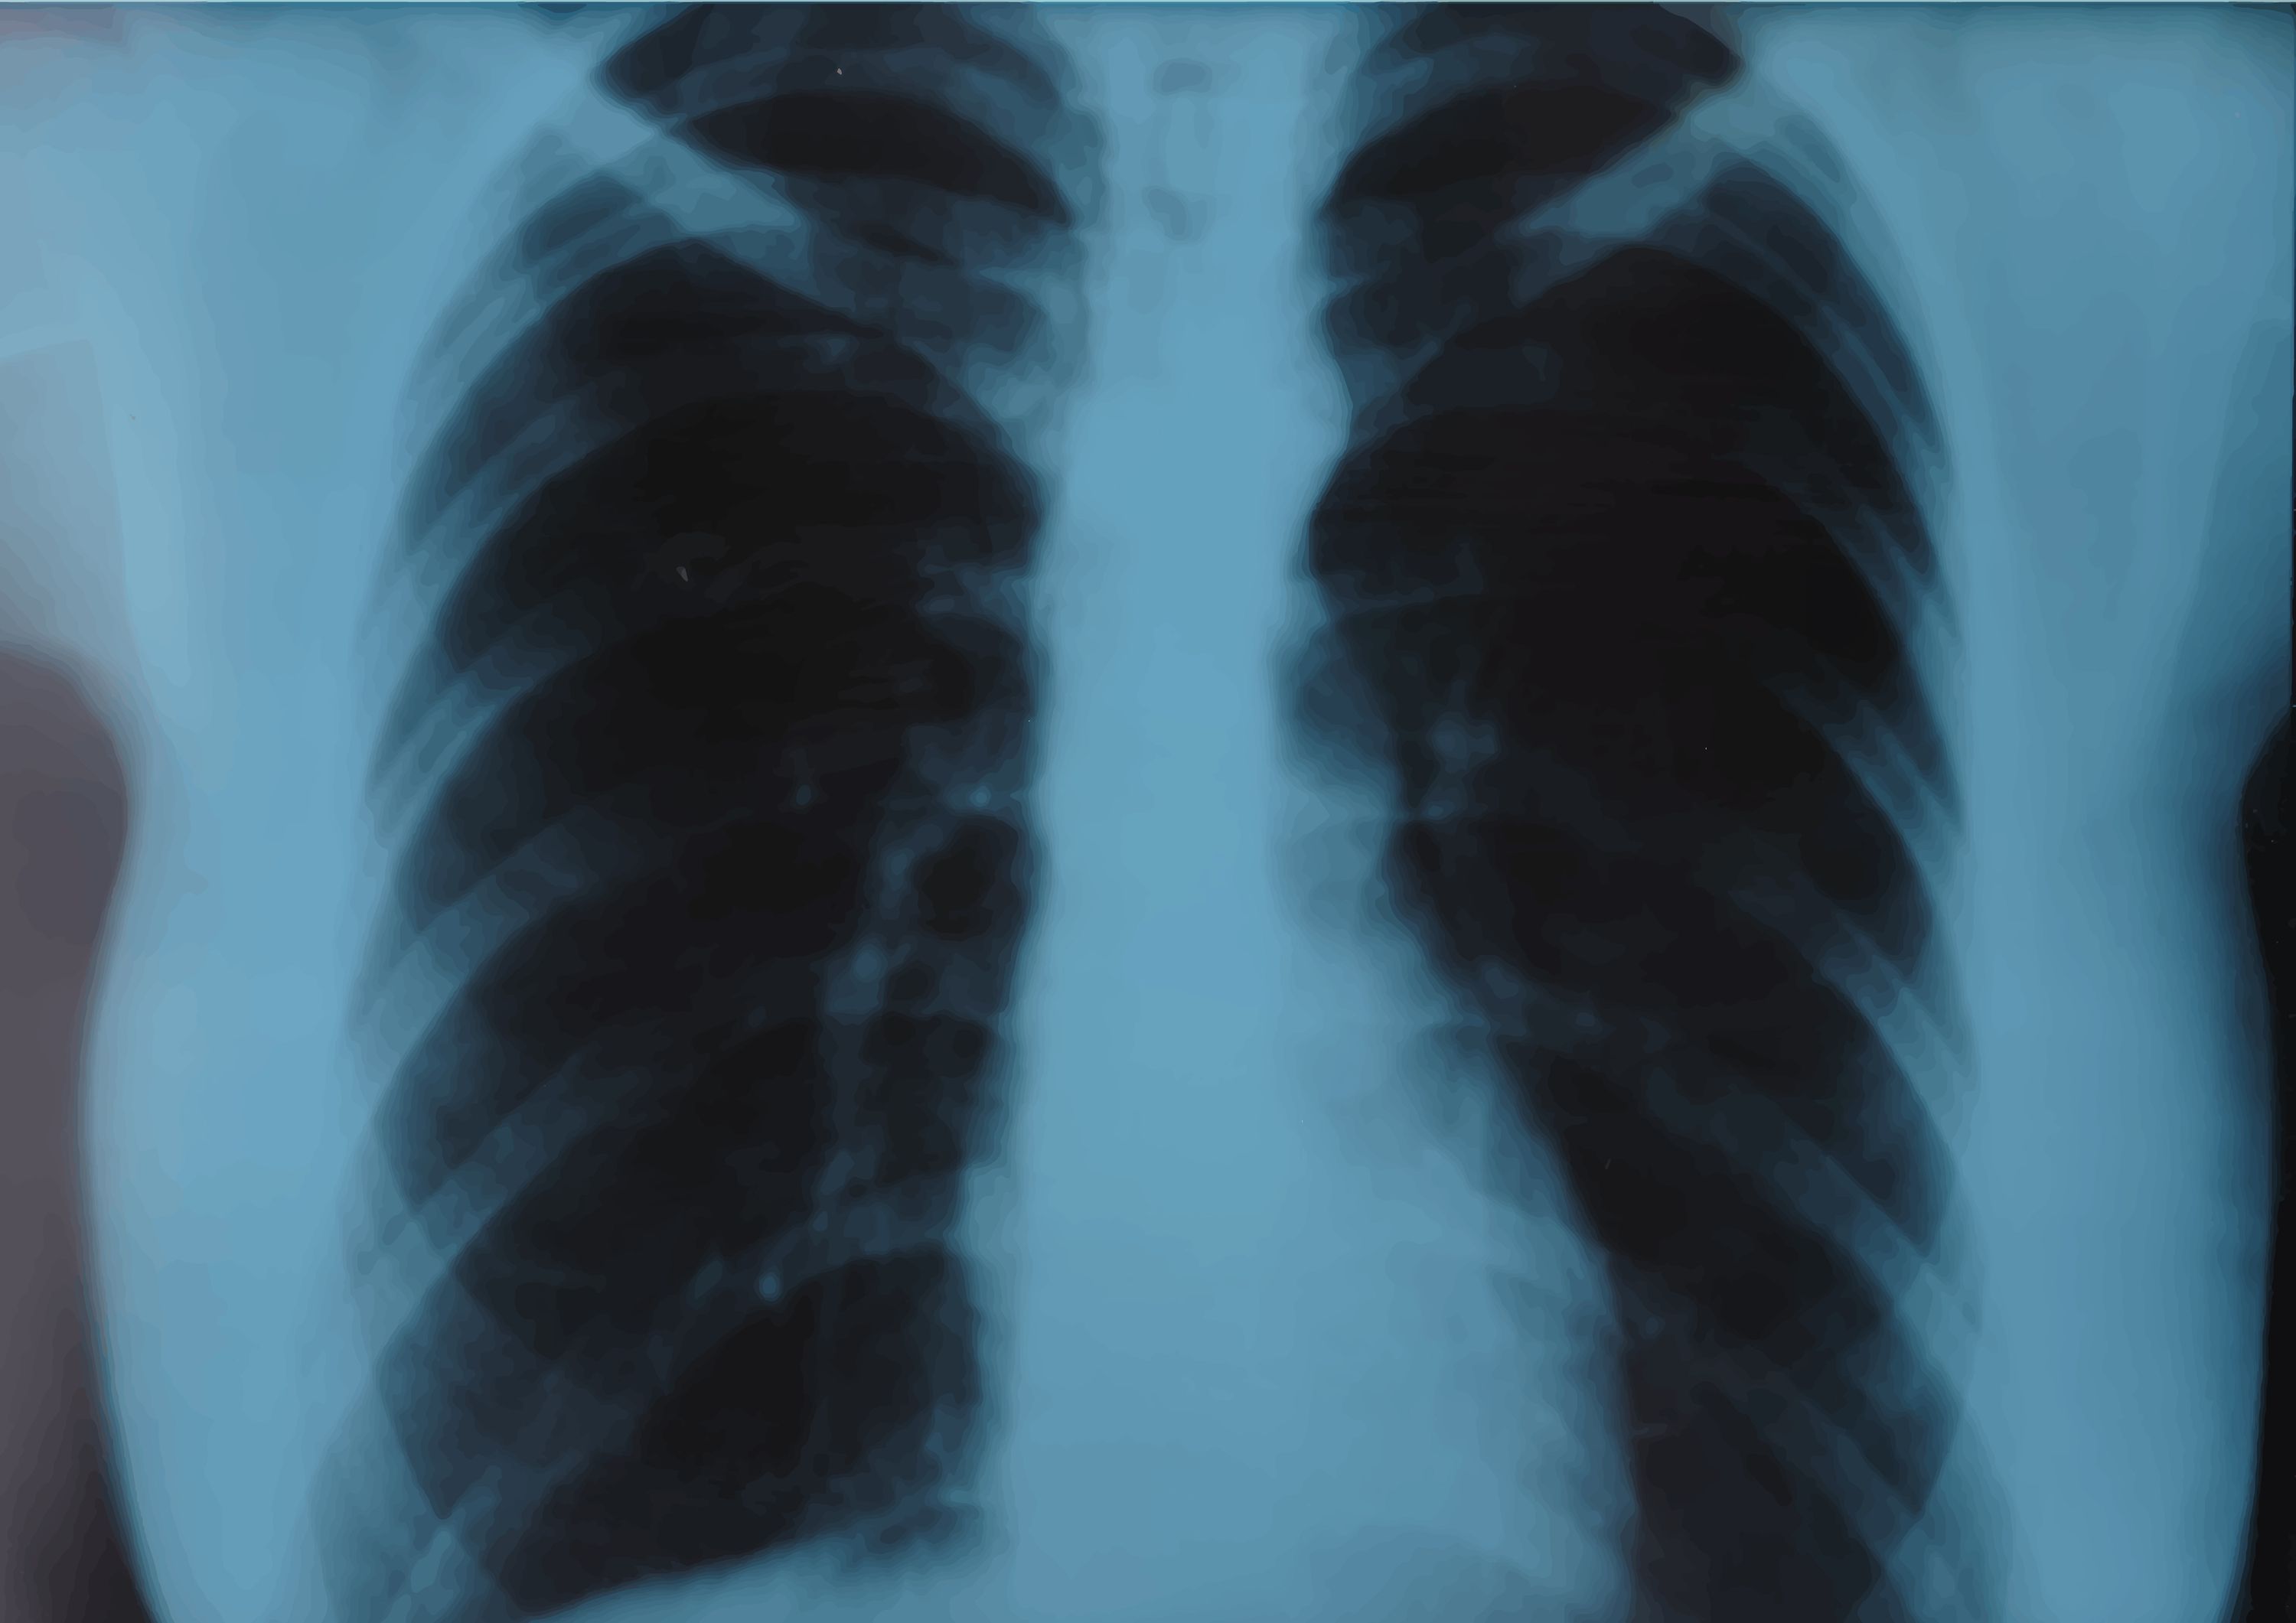 La inteligencia artificial predice el riesgo de enfermedad cardiaca usando una sola radiografía